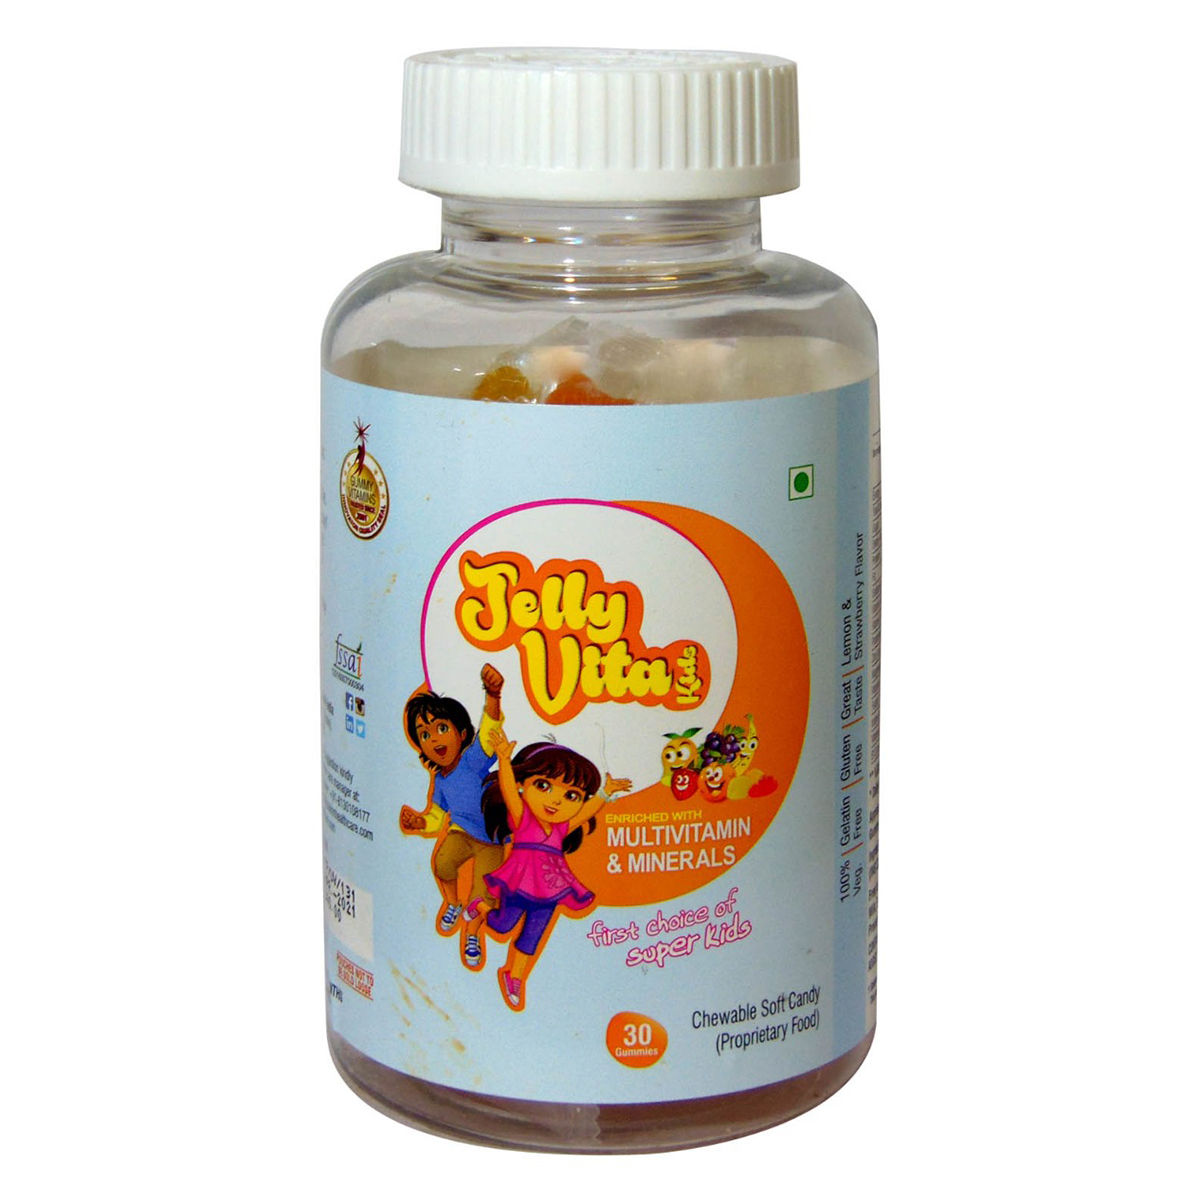 Buy Jelly Vita Kids Multivitamin & Minerals Gummies, 30 Count Online